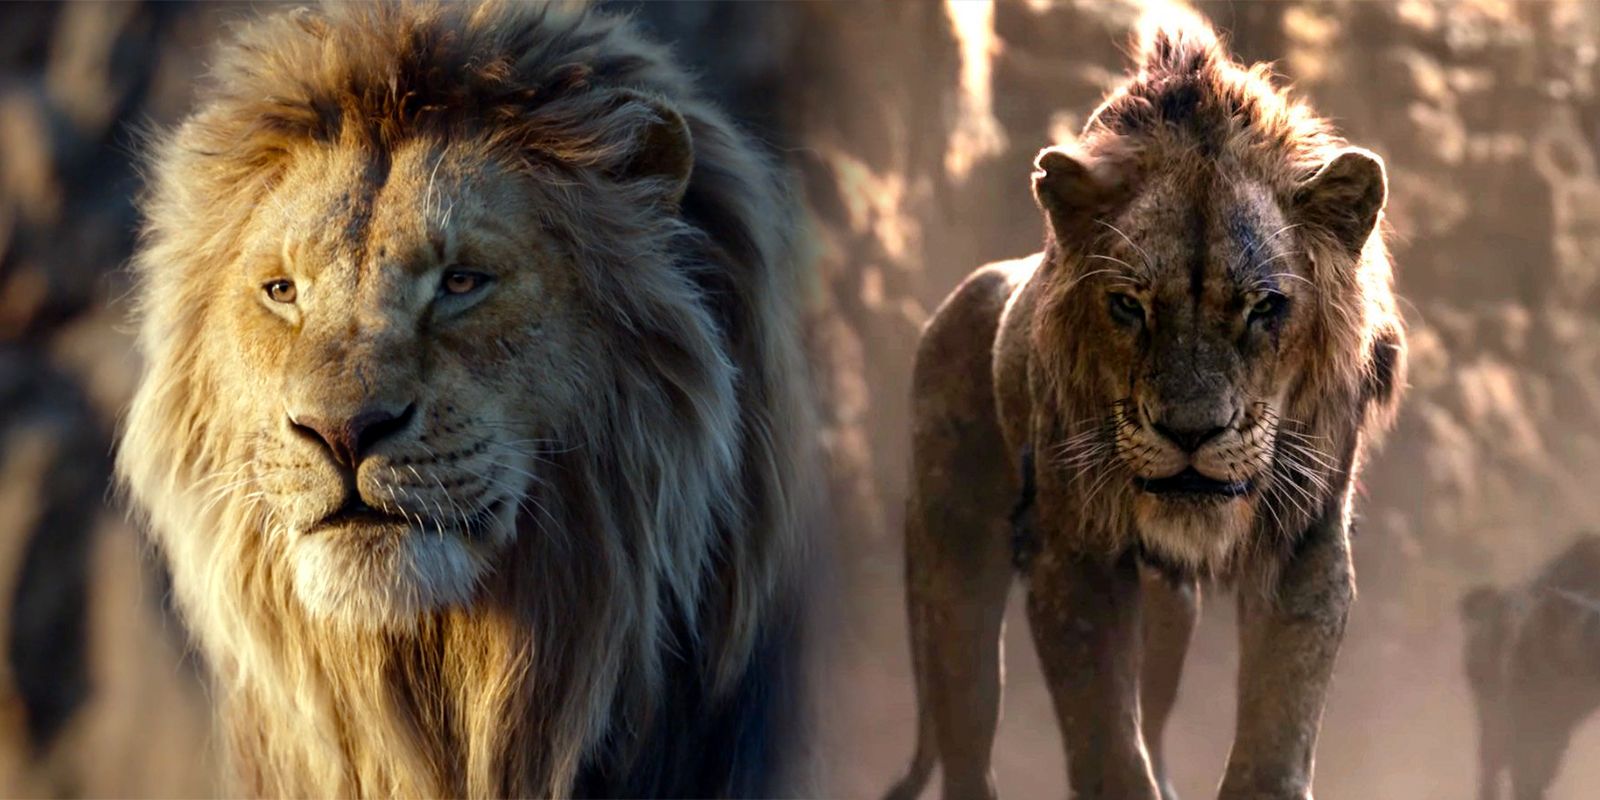 La precuela del Rey León presenta a los jóvenes Mufasa y Scar, y James Earl Jones no regresa